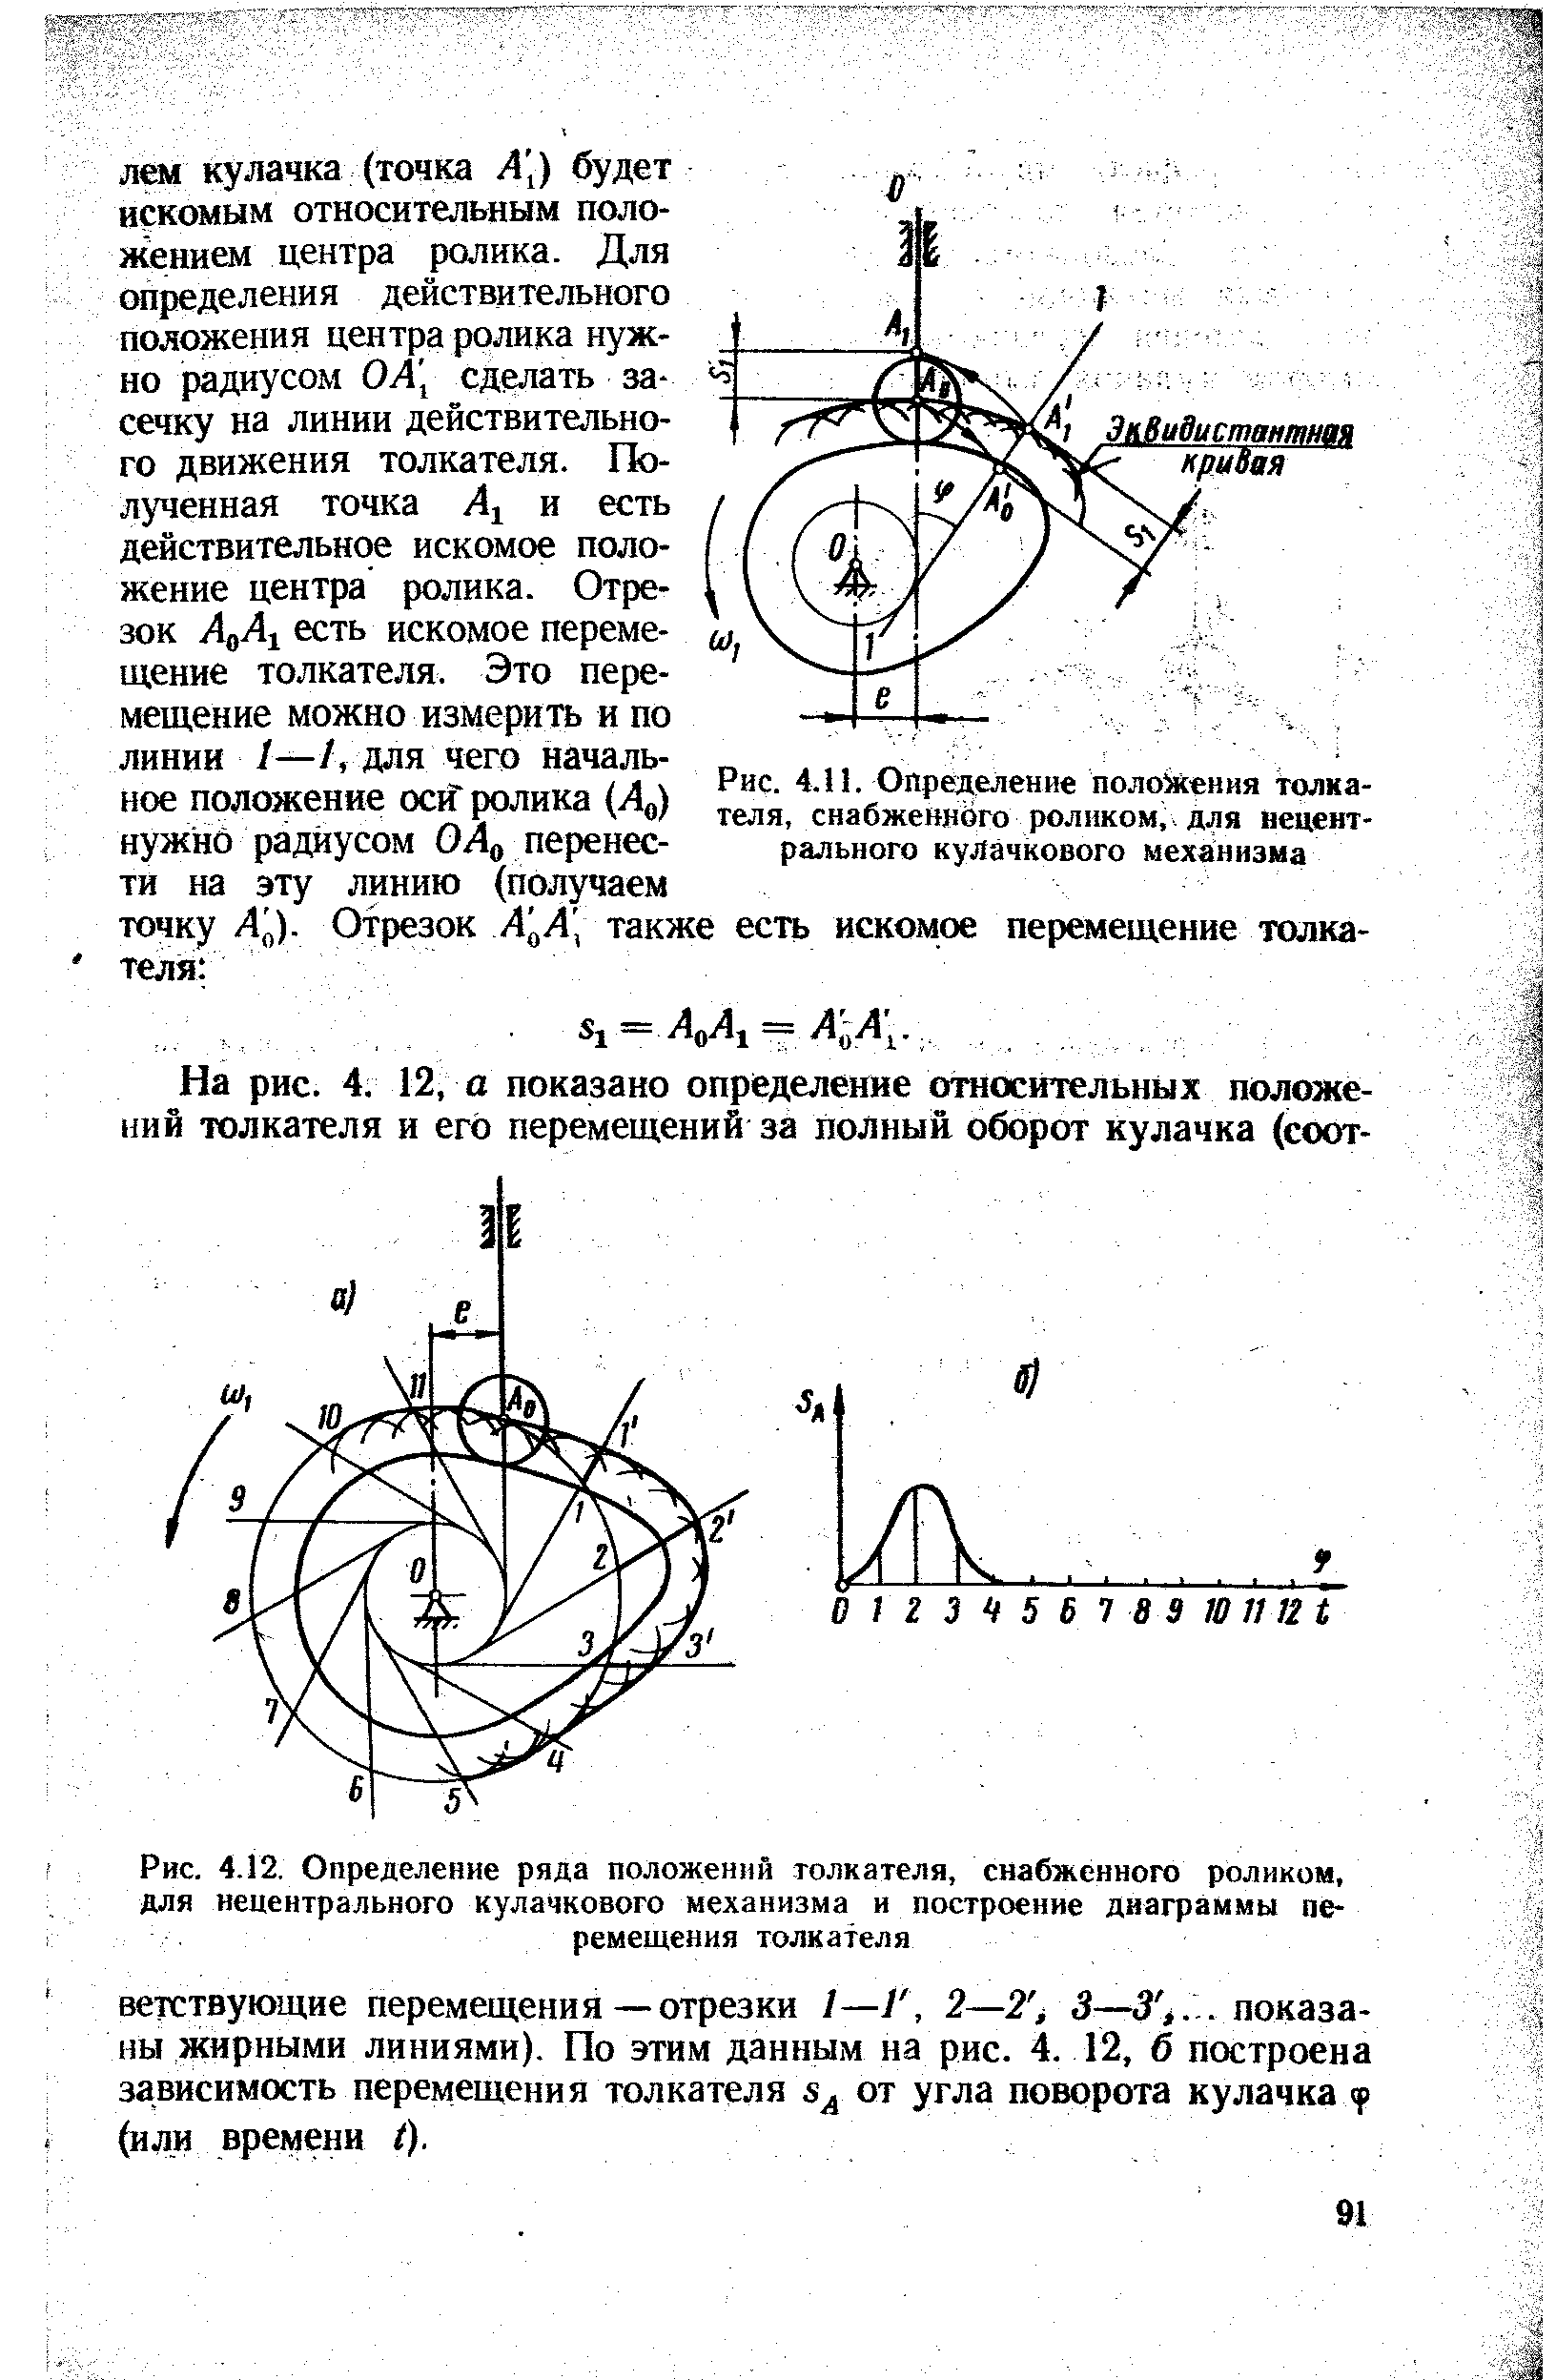 Рис. 4.12, Определение ряда положений толкателя, снабженного роликом, для нецентрального кулачкового механизма и построение диаграммы перемещения толкателя
